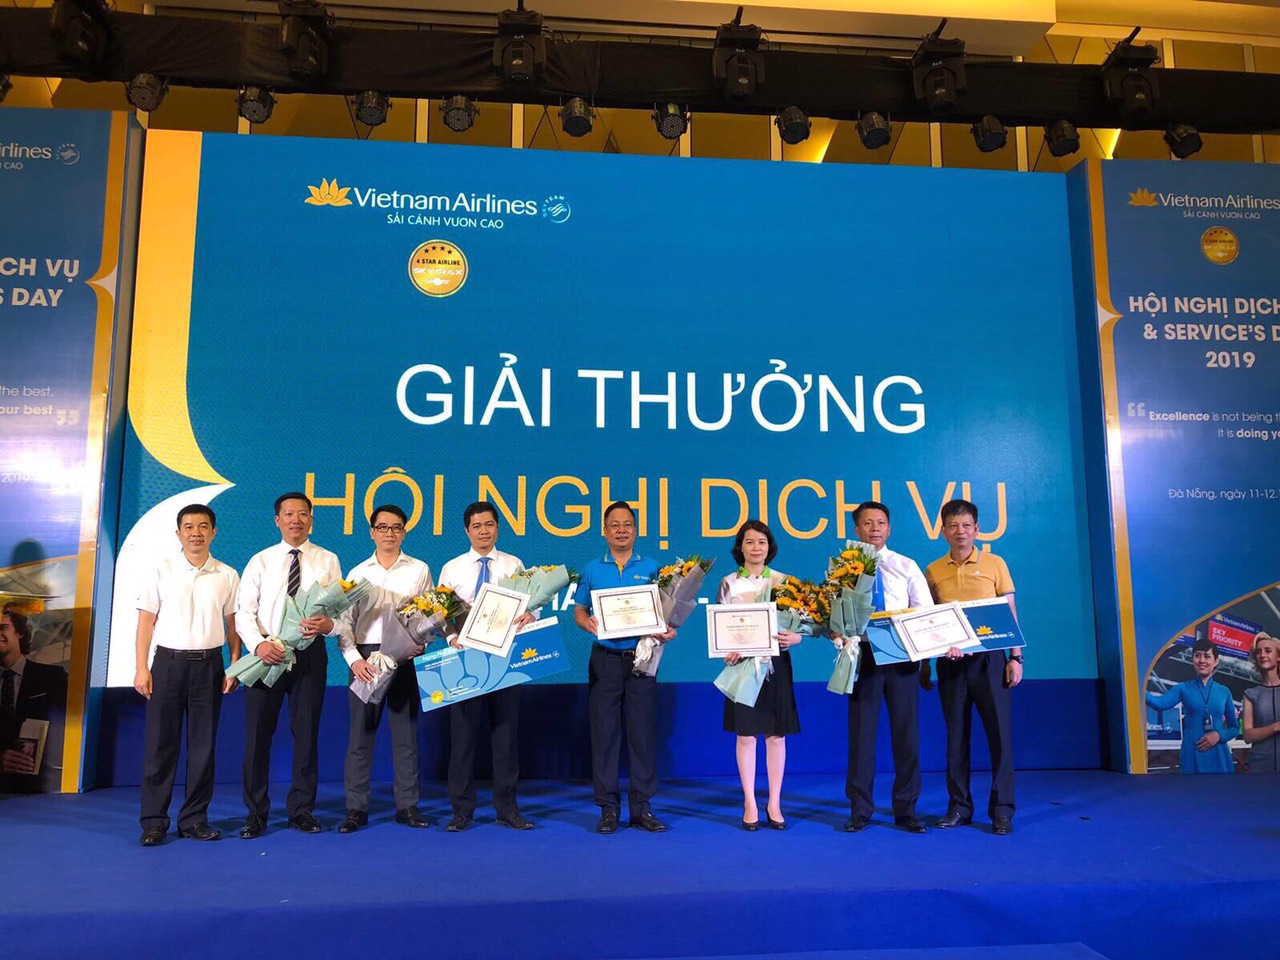 VIAGS tham dự Hội nghị dịch vụ 2019 và đón nhận 02 giải thưởng dịch vụ từ Vietnam Airlines